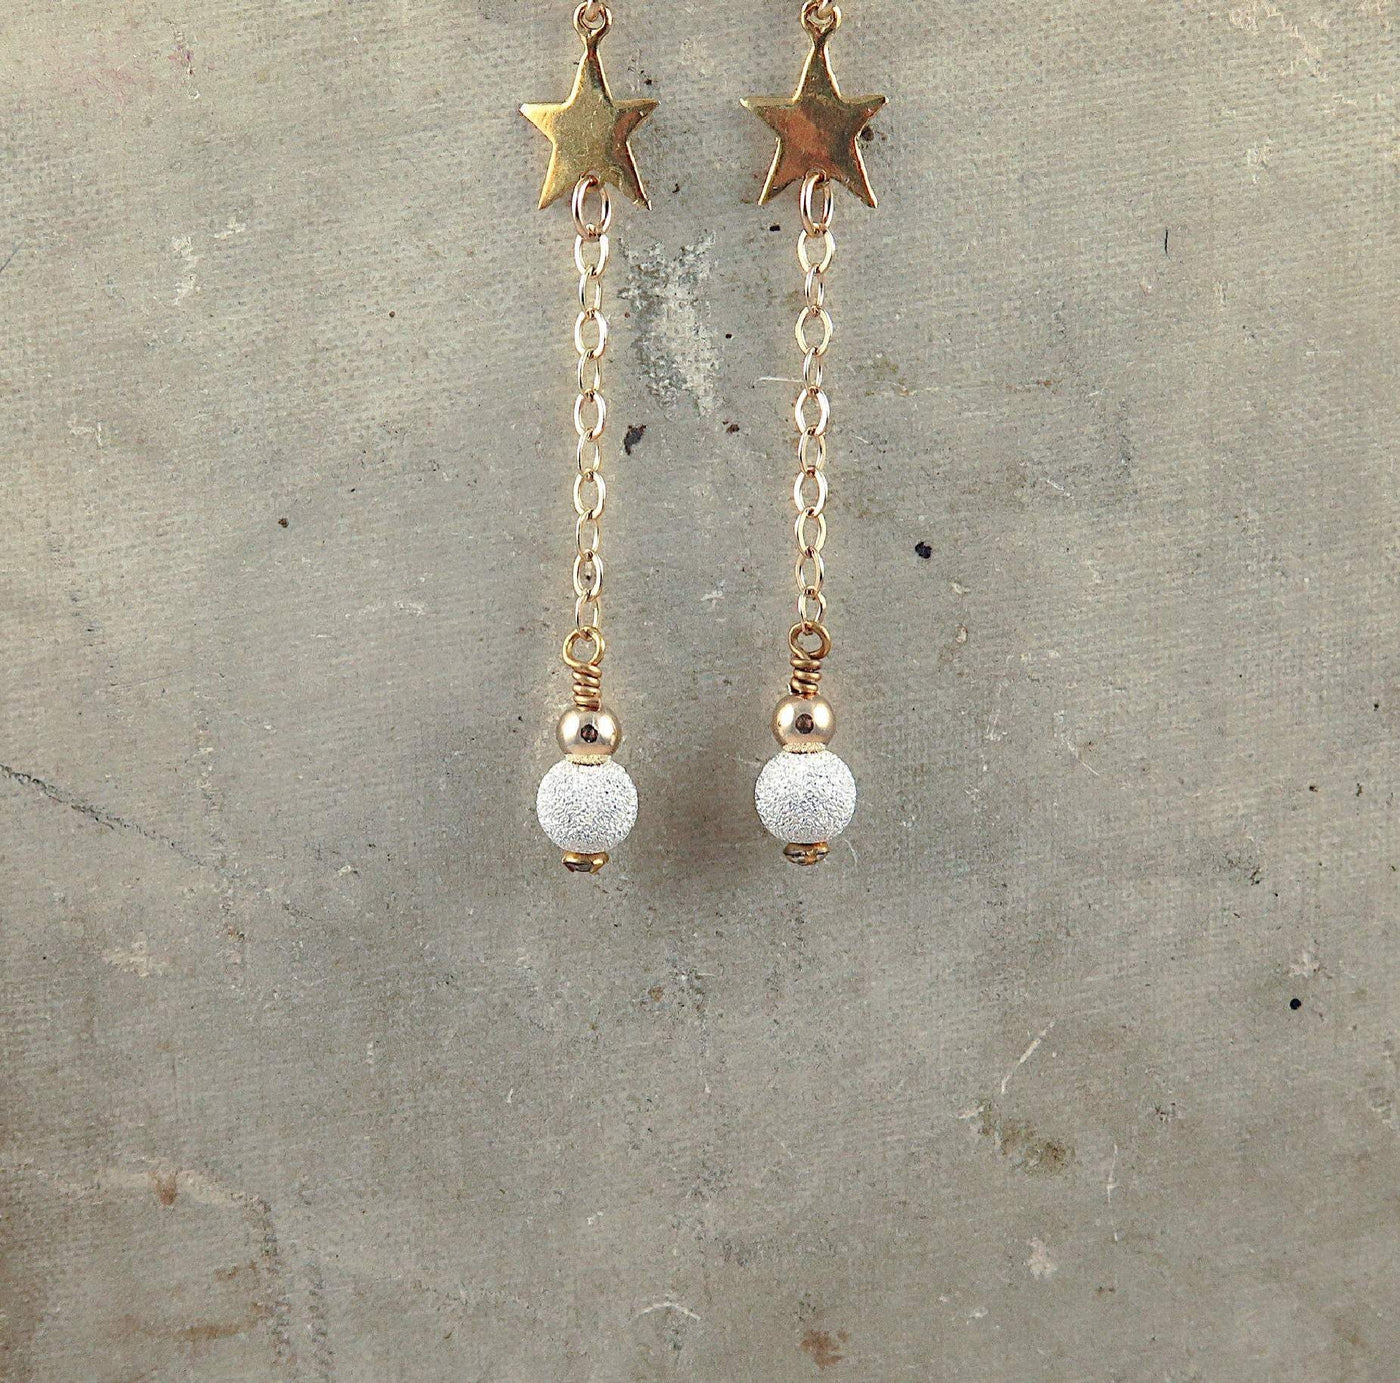 Gold Star Earrings Celestial Style